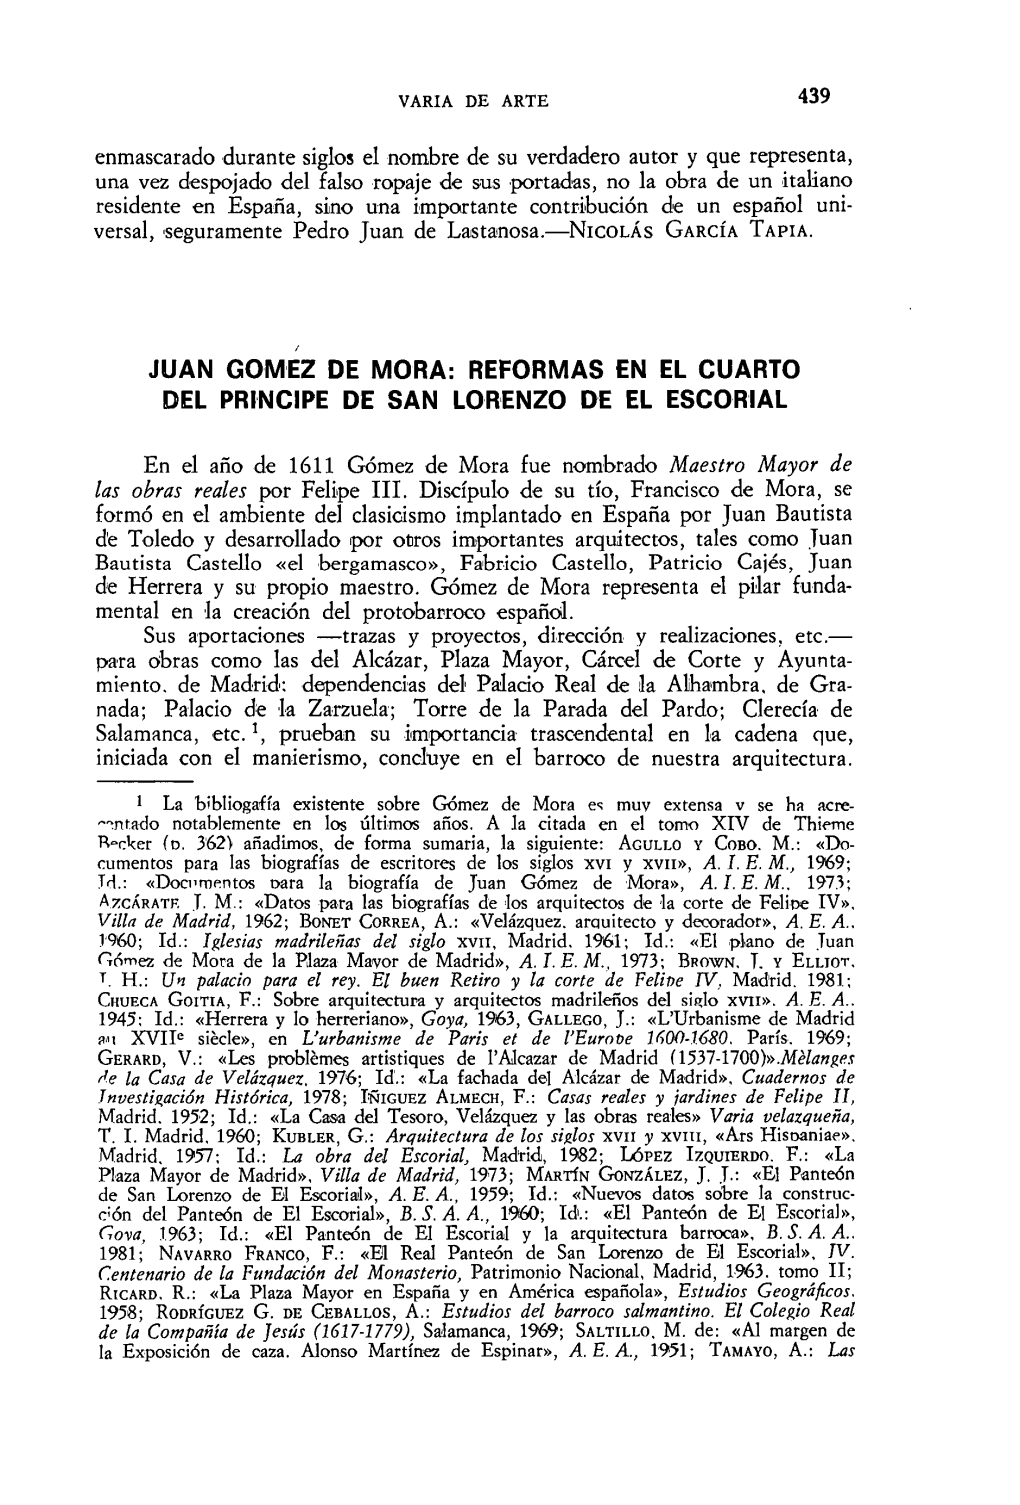 Juan Gomez De Mora: Reformas En El Cuarto Del Príncipe De San Lorenzo De El Escorial